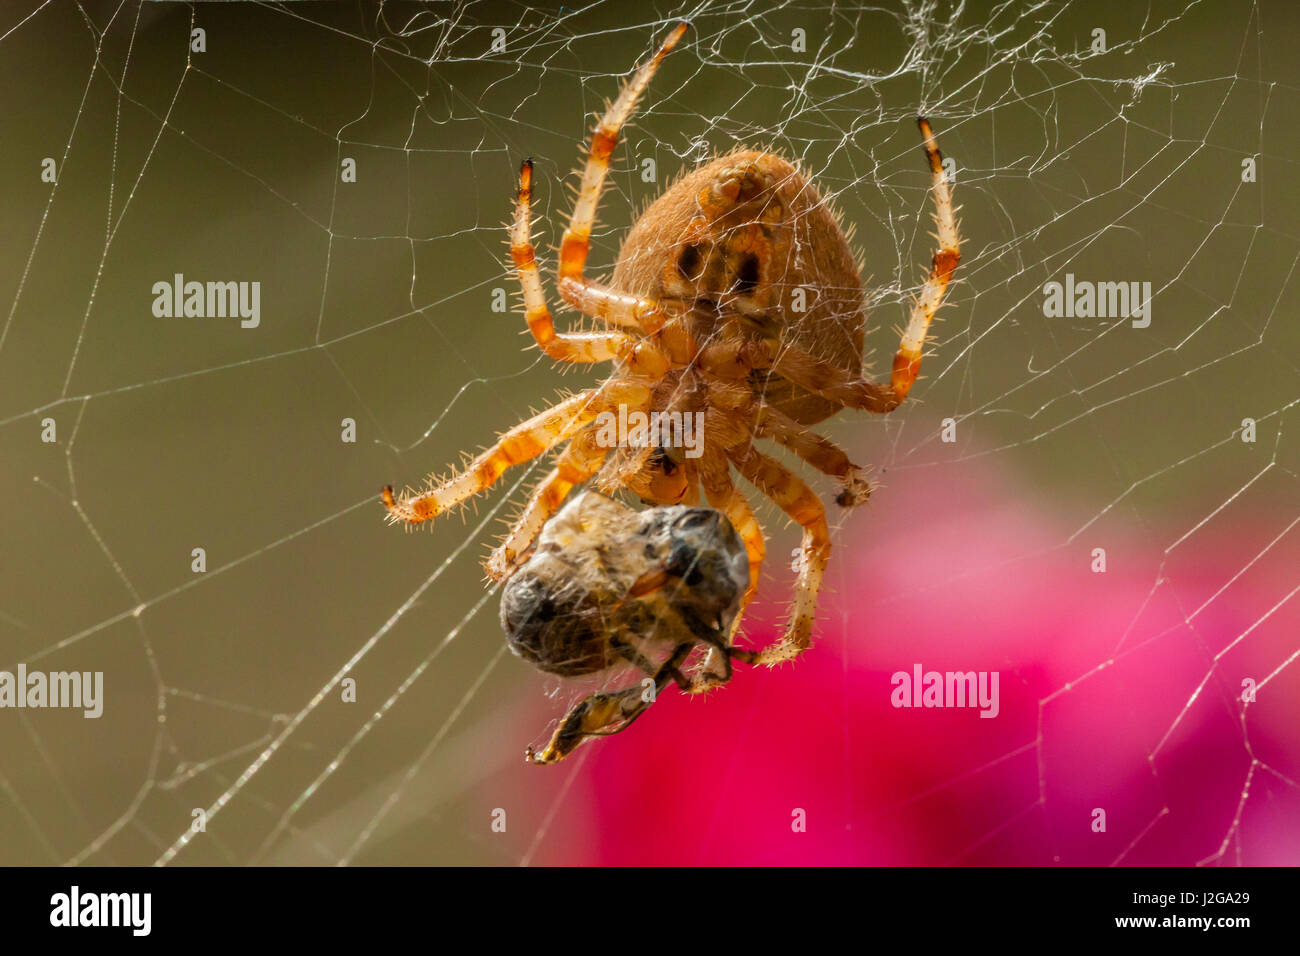 Stati Uniti d'America, Colorado, Jefferson county. Orb-weaver spider con la preda. Credito come: Cathy e Gordon Illg Jaynes / Galleria / DanitaDelimont.com Foto Stock